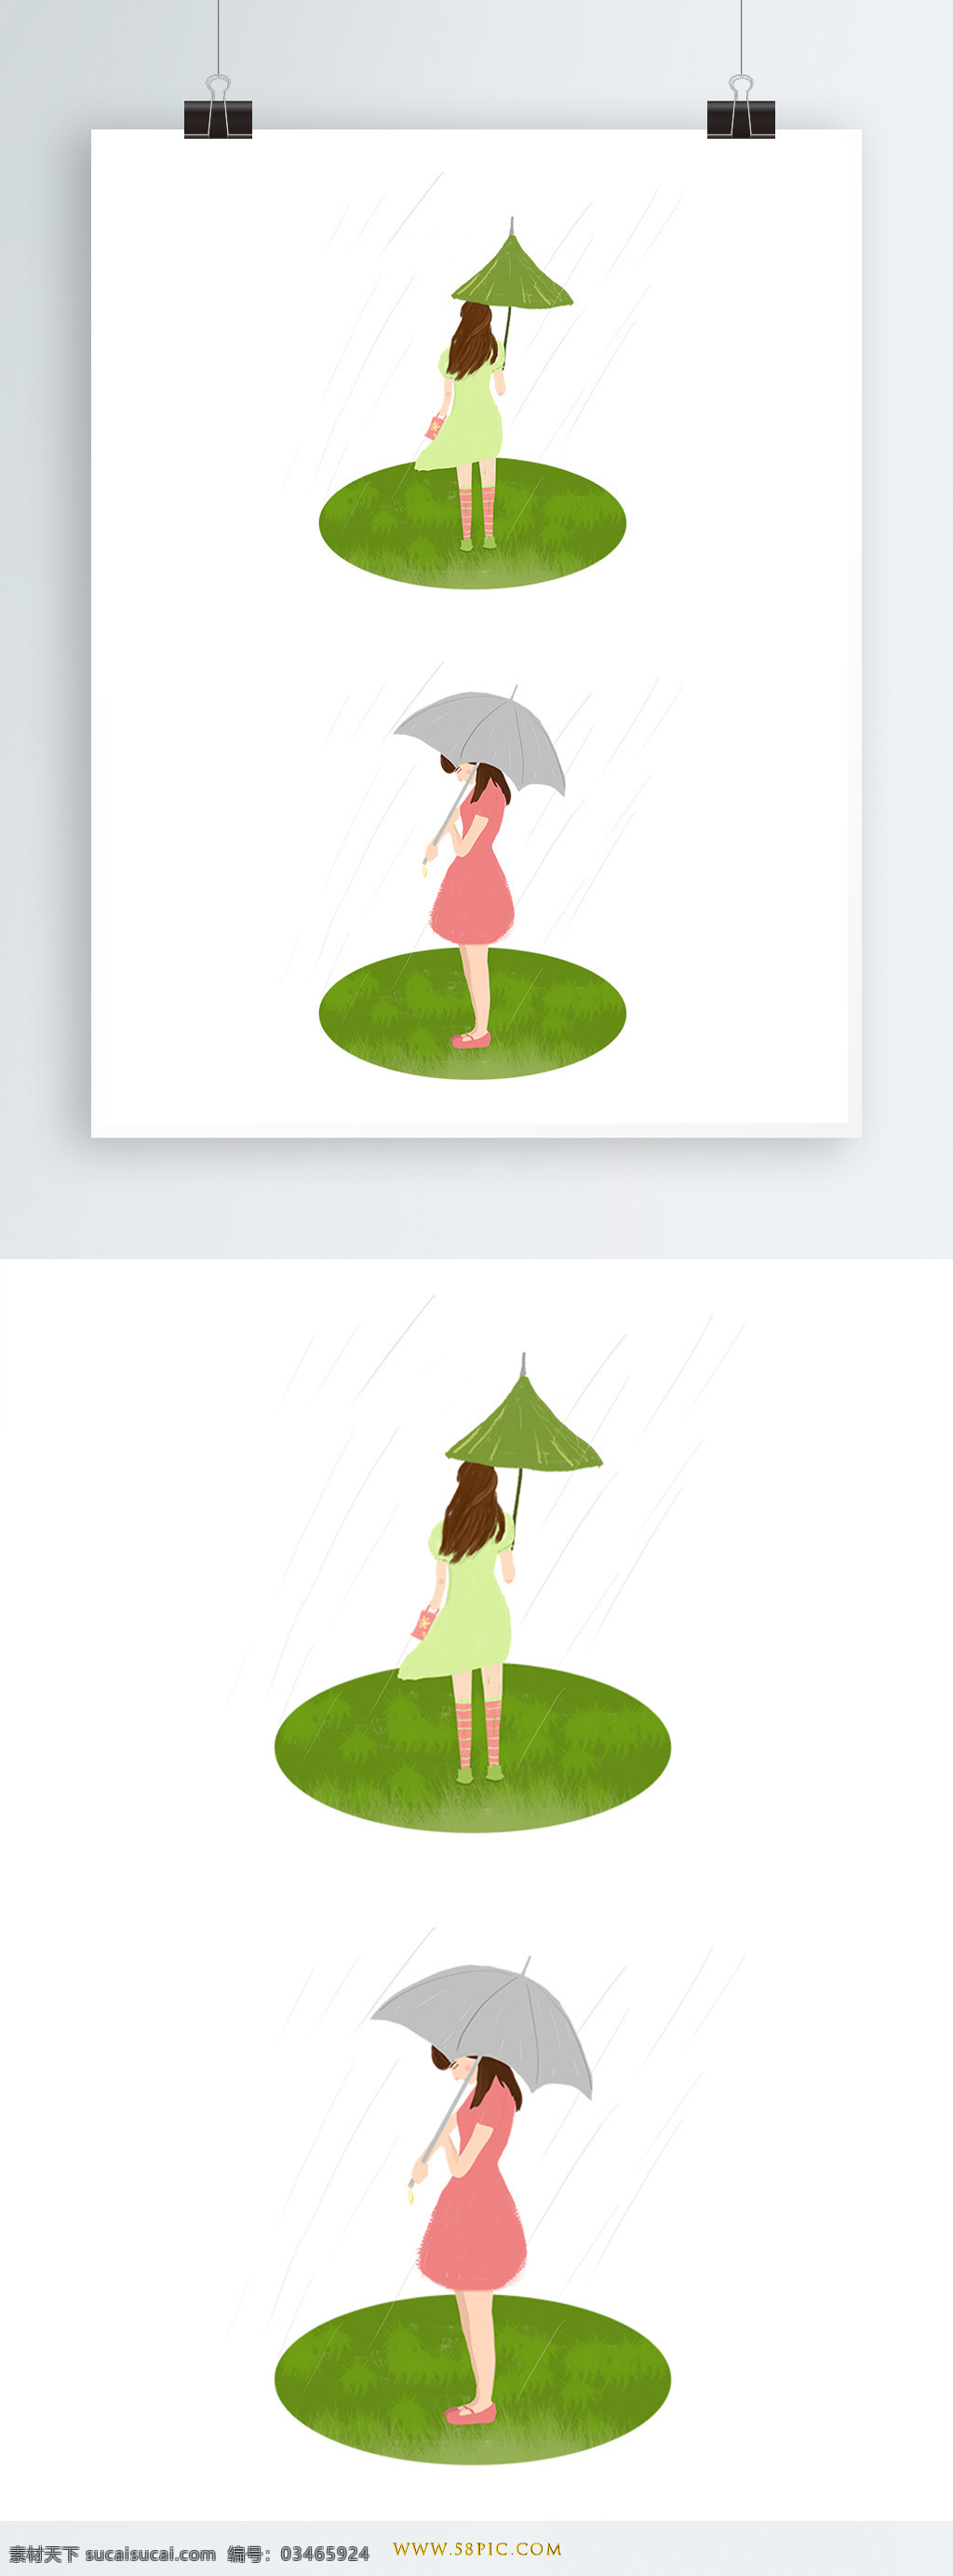 原创 立夏 手绘 撑伞 女孩 插画 元素 人物 动物 场景